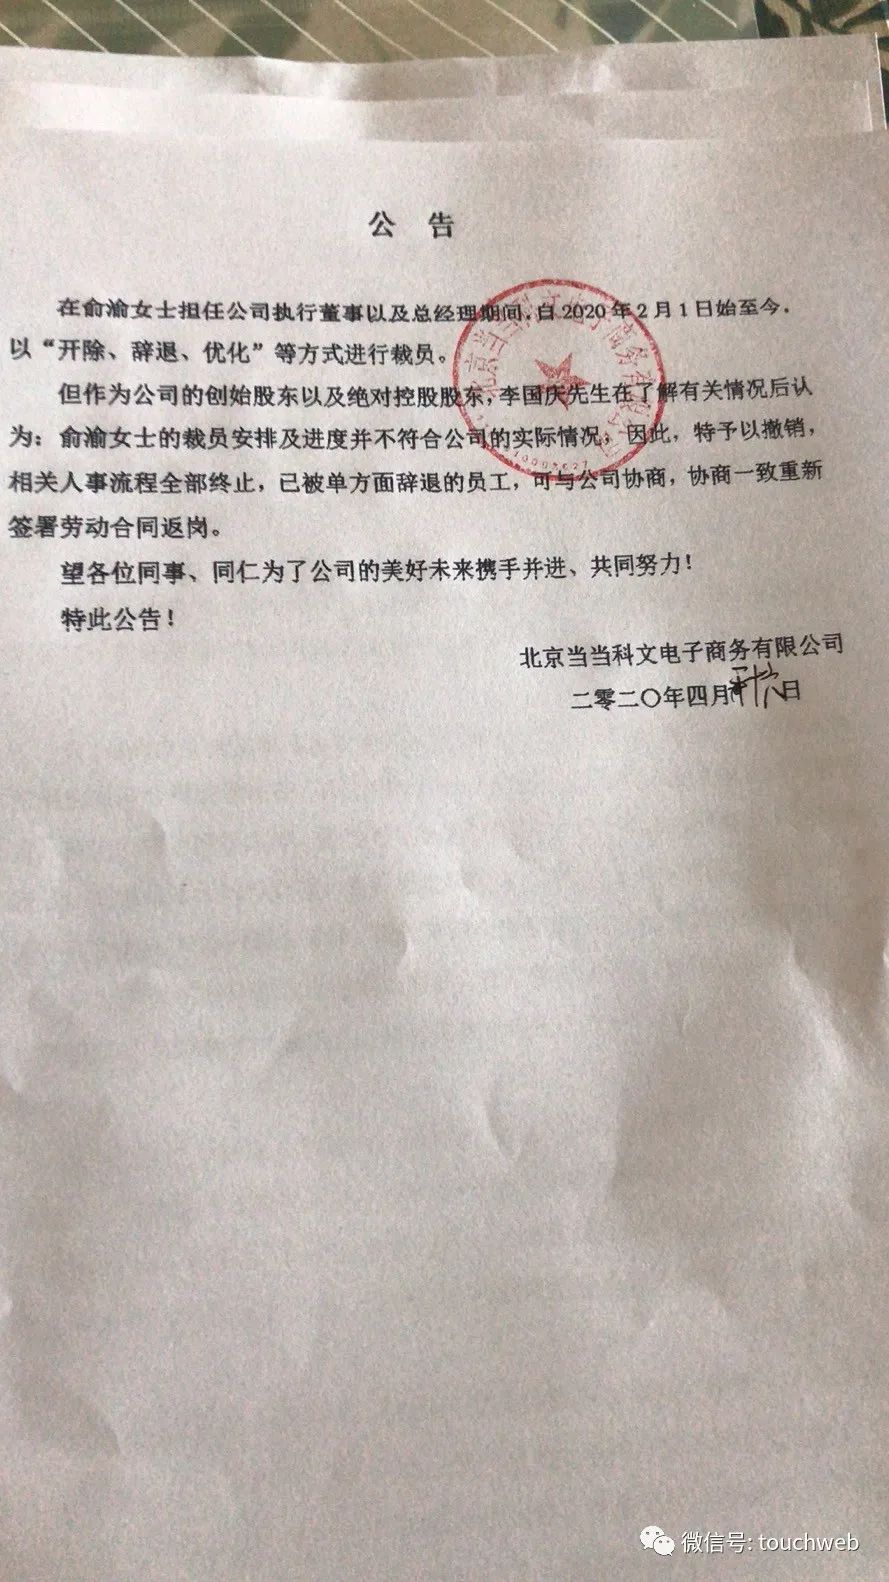 李國慶攜早晚讀書全面接管當當 公開「罷免」俞渝 職場 第2張